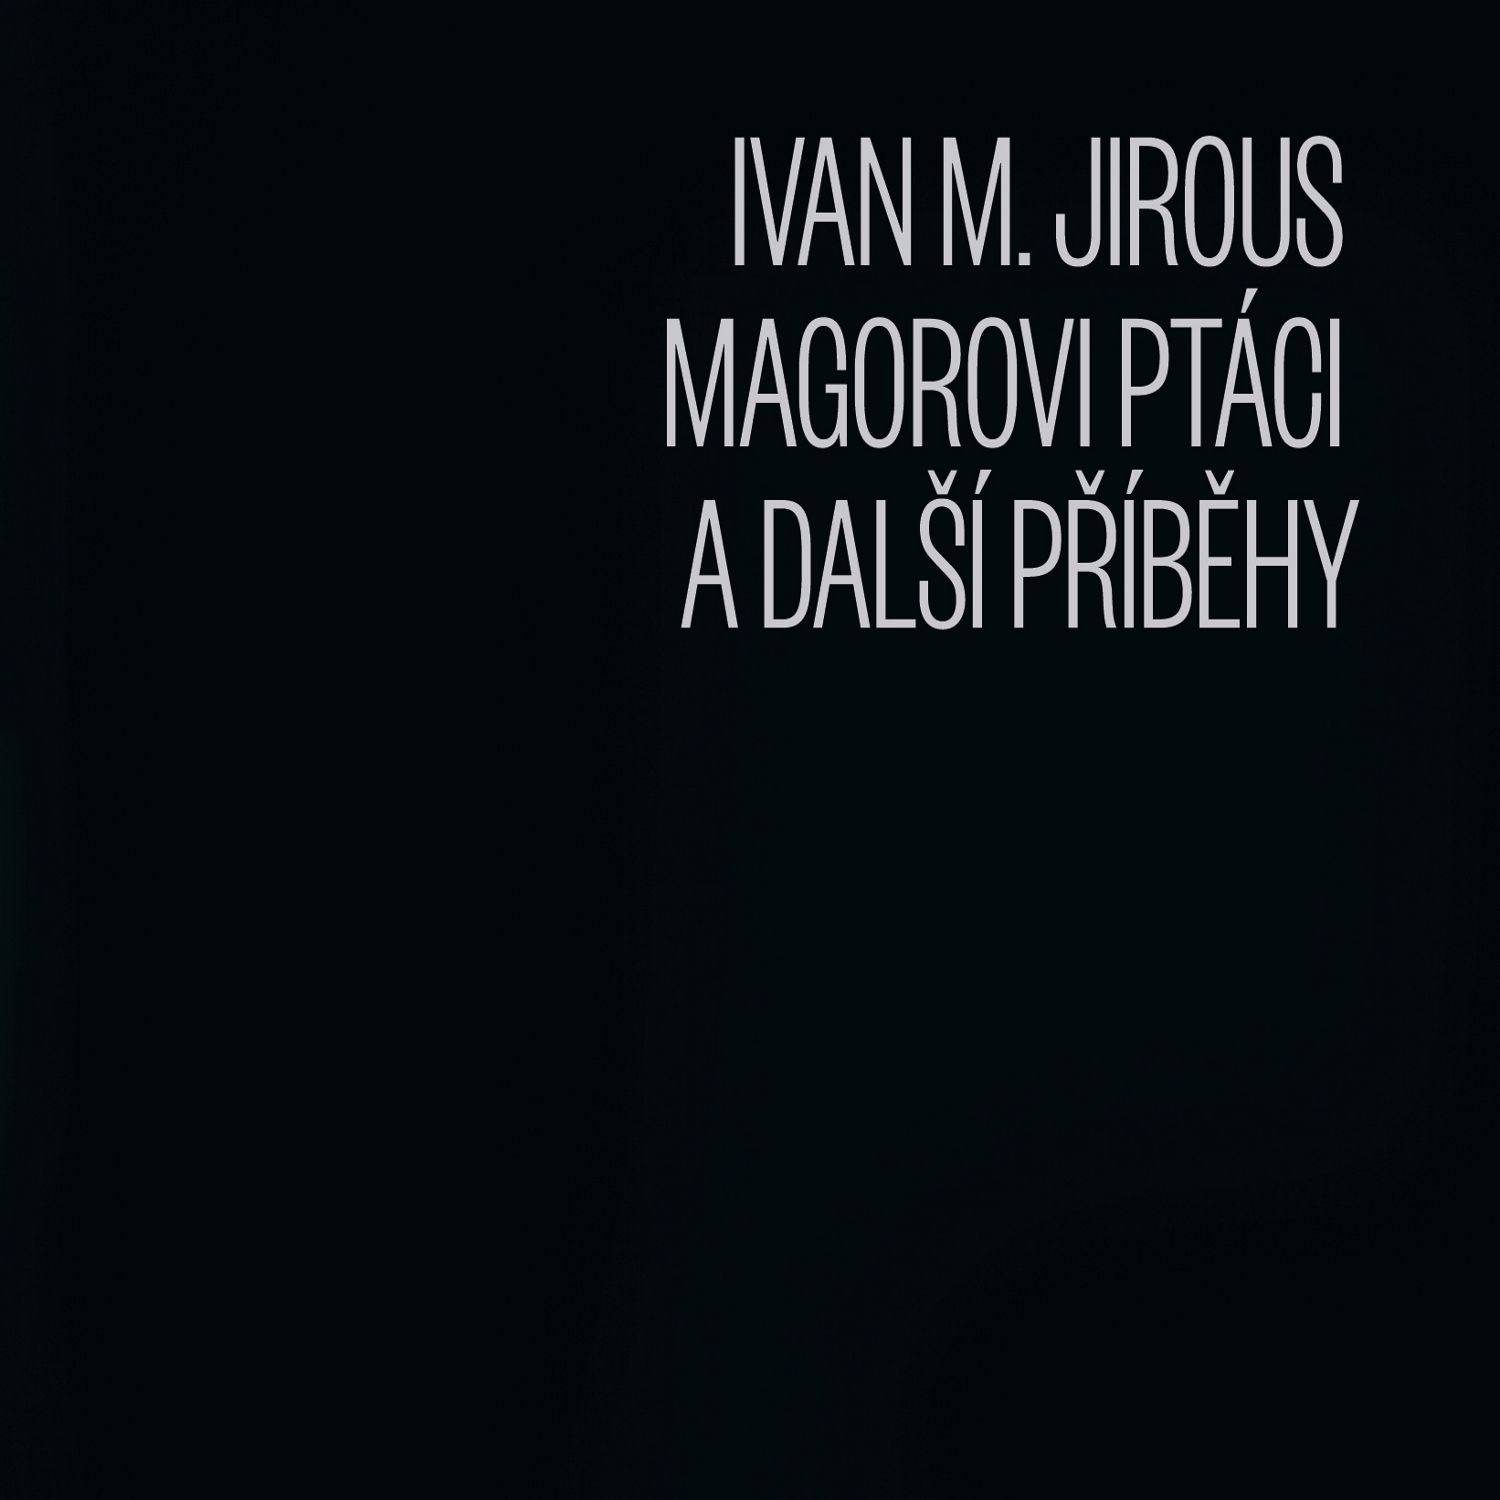 CD Shop - JIROUS IVAN M, MAGOROVI PTACI A DALSI PRIBEHY